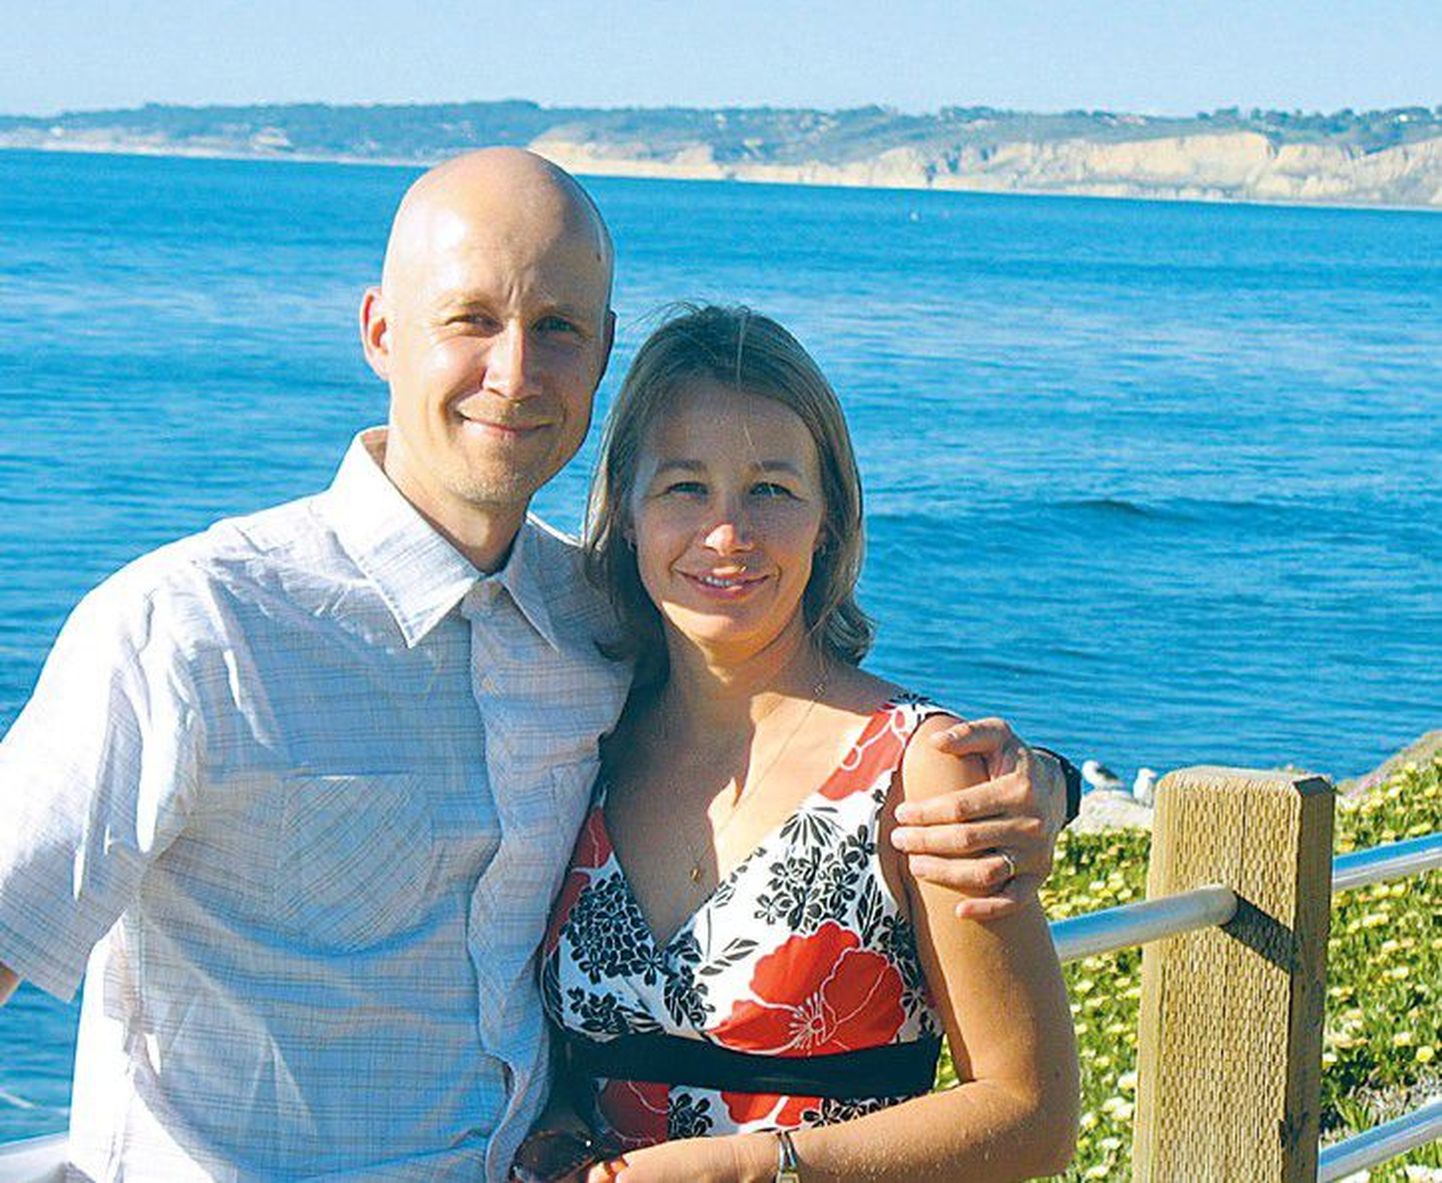 Тамбет Теэсалу, открывший новый метод лечения рака, с супругой Силле на побережье в Санта-Барбаре.